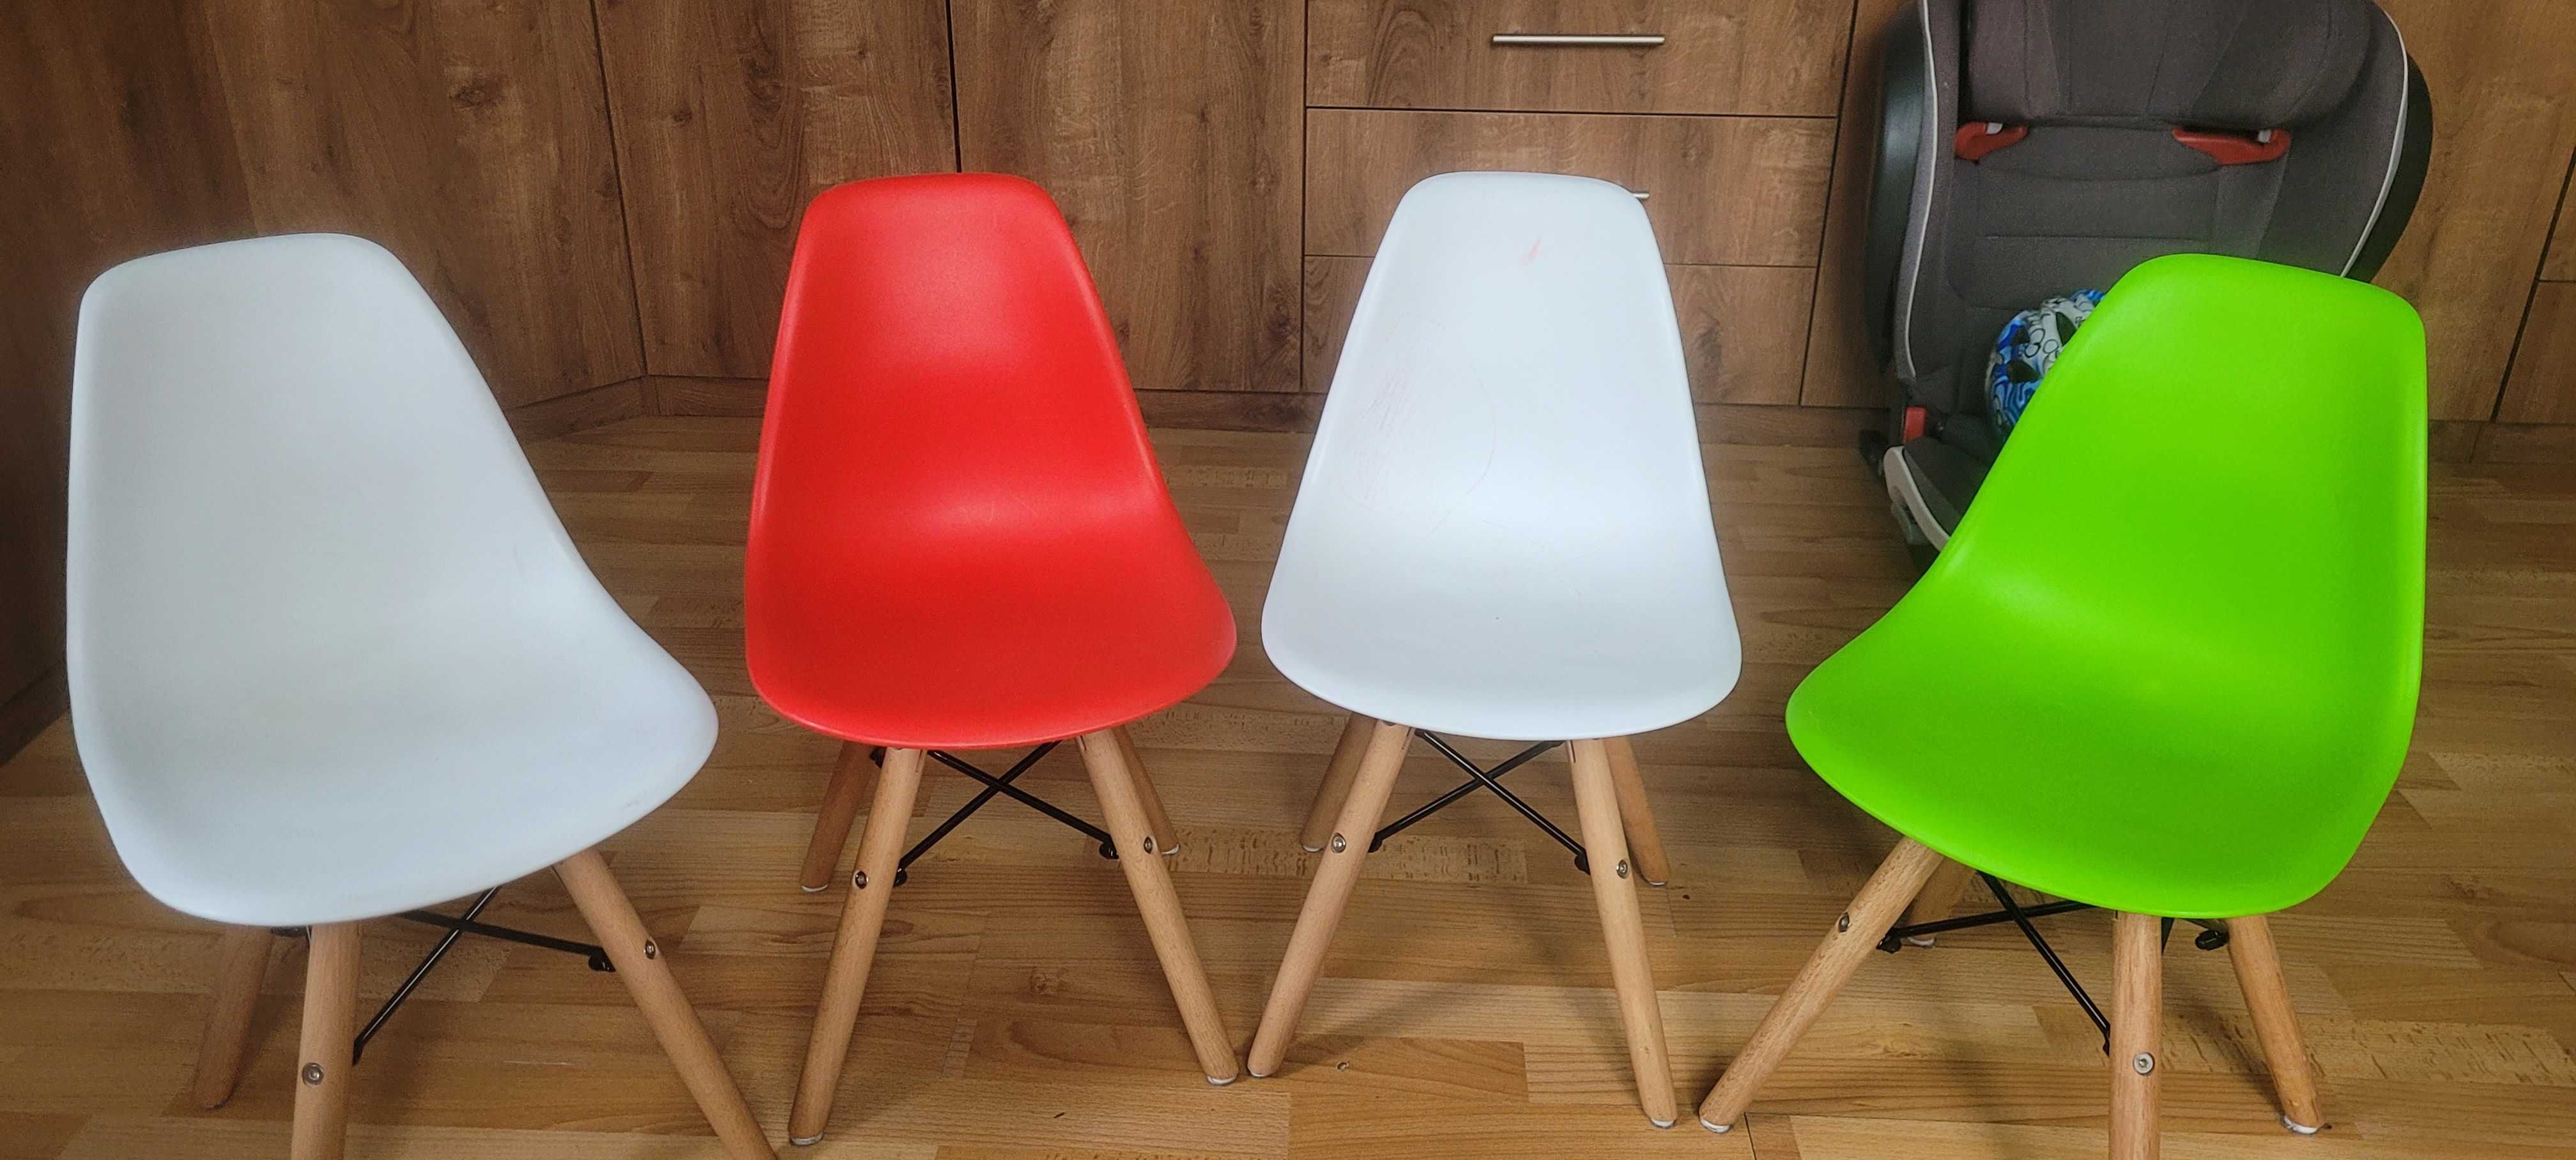 4 krzesła skandynawskie dziecięce 2 białe, zielone i czerwone stan bdb